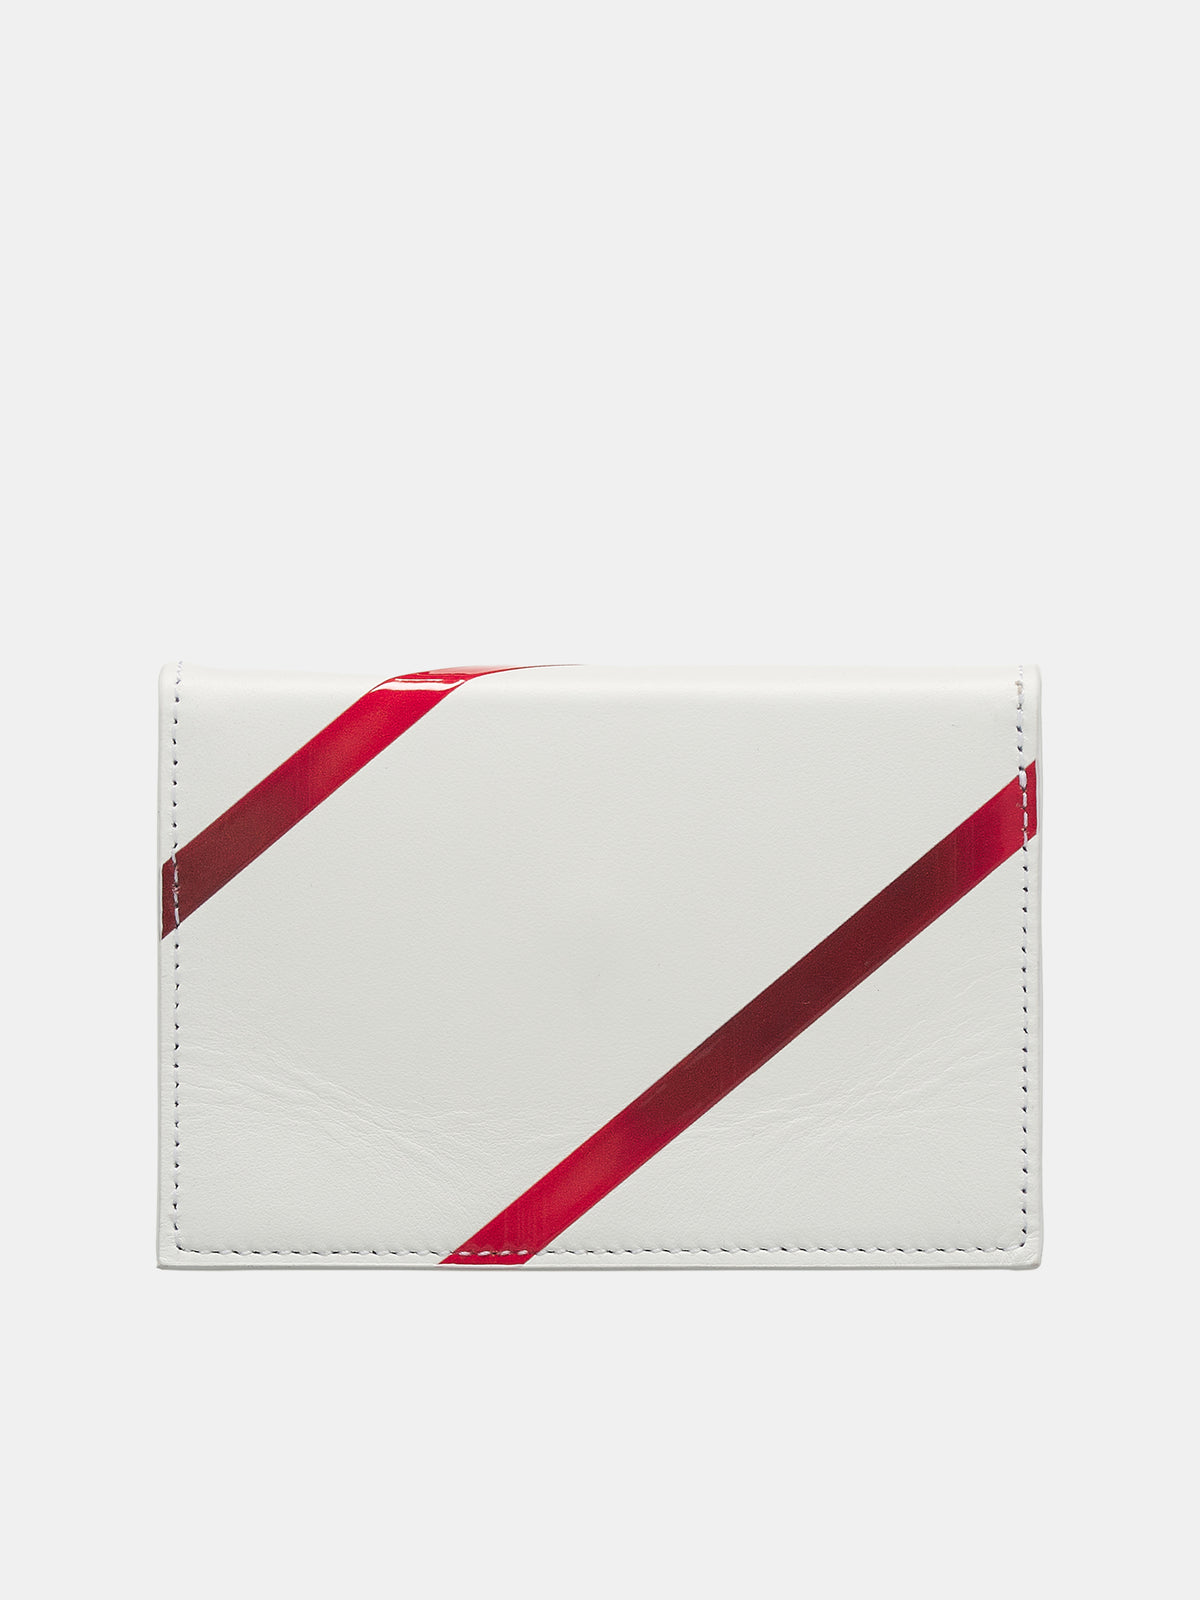 D'Heygere Gift Wrap Wallet (24SMEBO009-WHITE-MULTI)